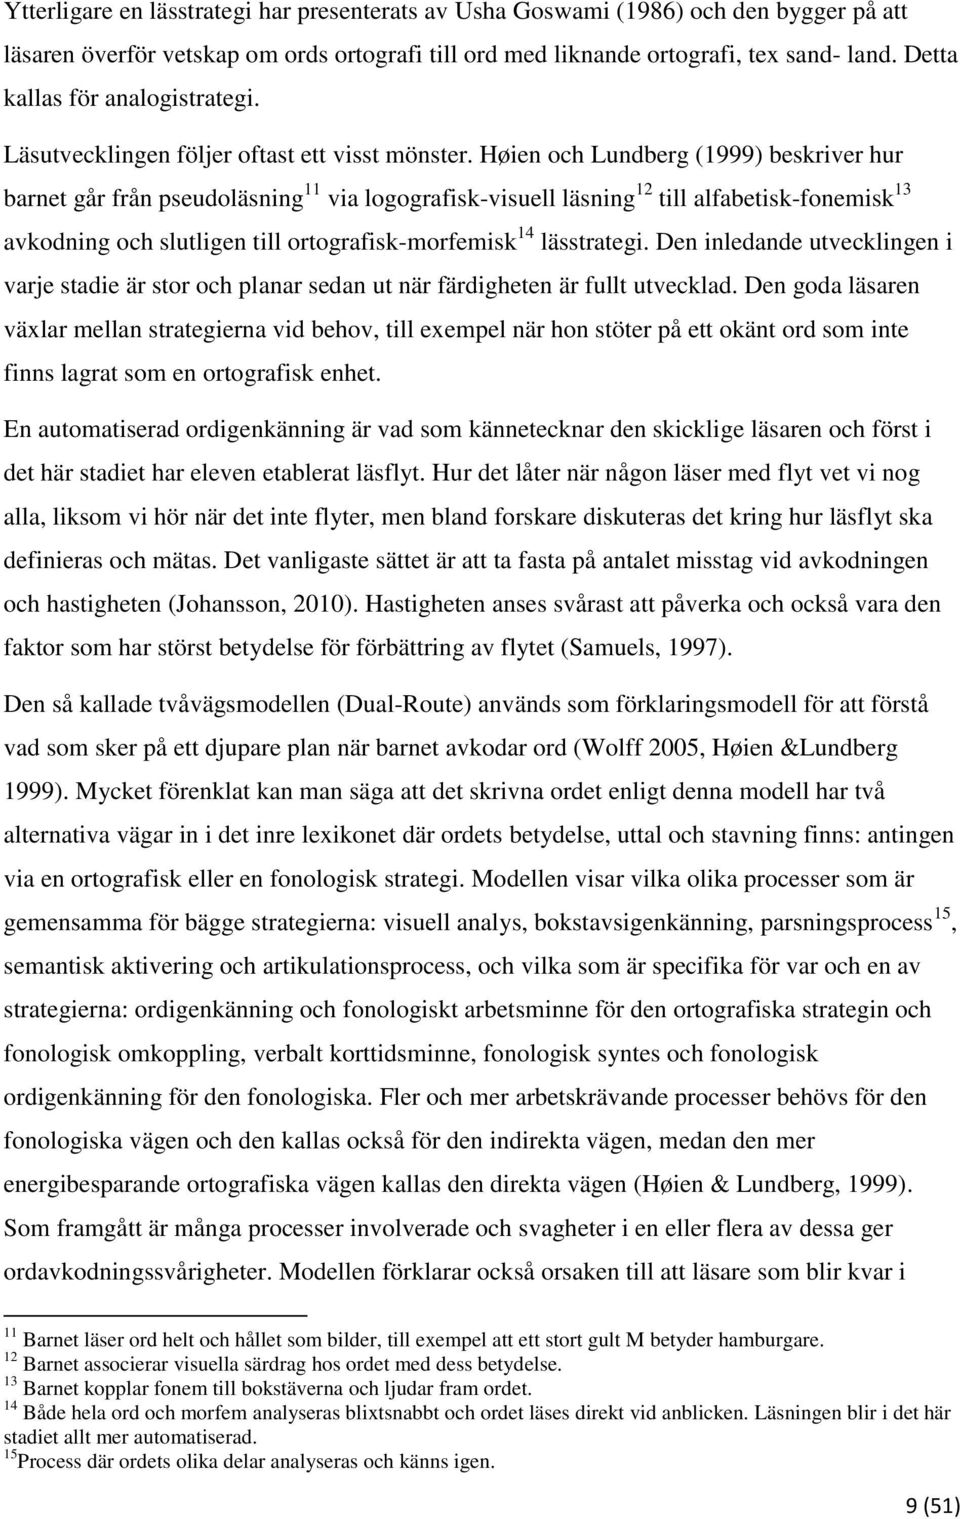 Høien och Lundberg (1999) beskriver hur barnet går från pseudoläsning 11 via logografisk-visuell läsning 12 till alfabetisk-fonemisk 13 avkodning och slutligen till ortografisk-morfemisk 14